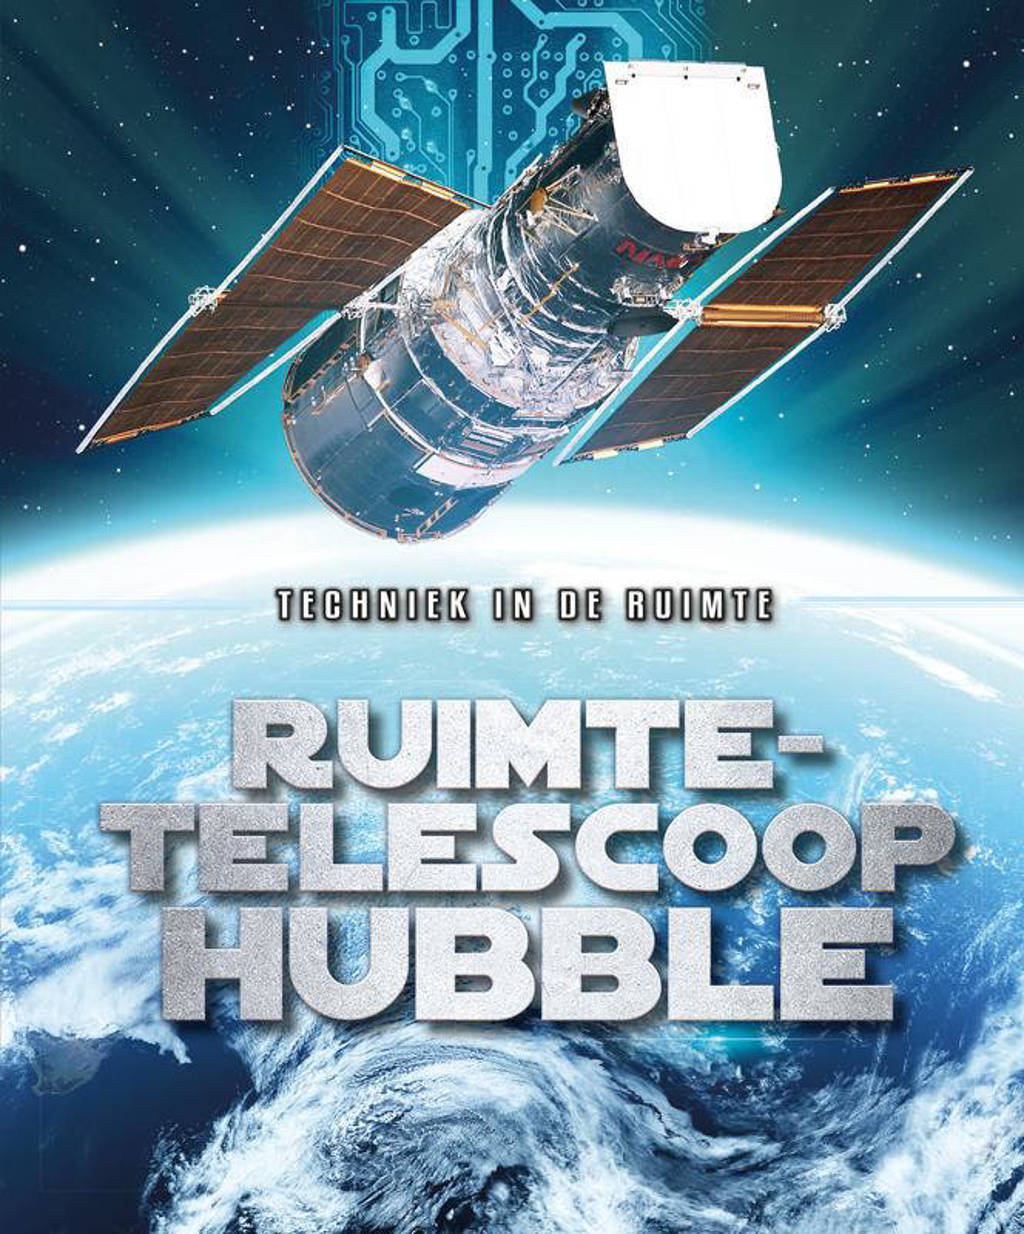 Techniek in de ruimte: Ruimte-telescoop Hubble - Allan Morey